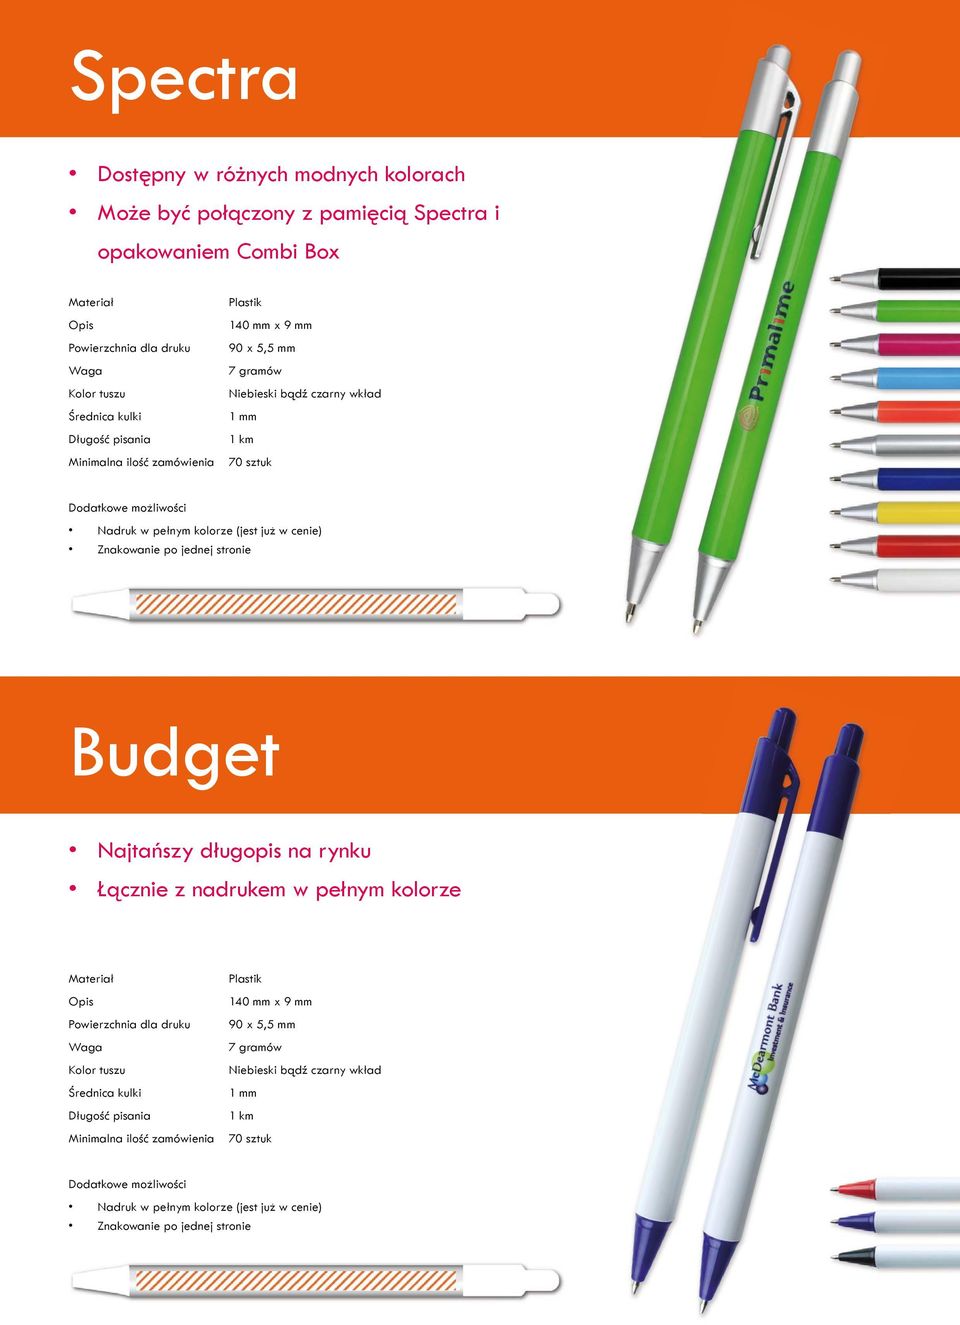 po jednej stronie Budget Najtańszy długopis na rynku Łącznie z nadrukem w pełnym kolorze Materiał Opis Powierzchnia dla druku Kolor tuszu Średnica kulki Długość  po jednej